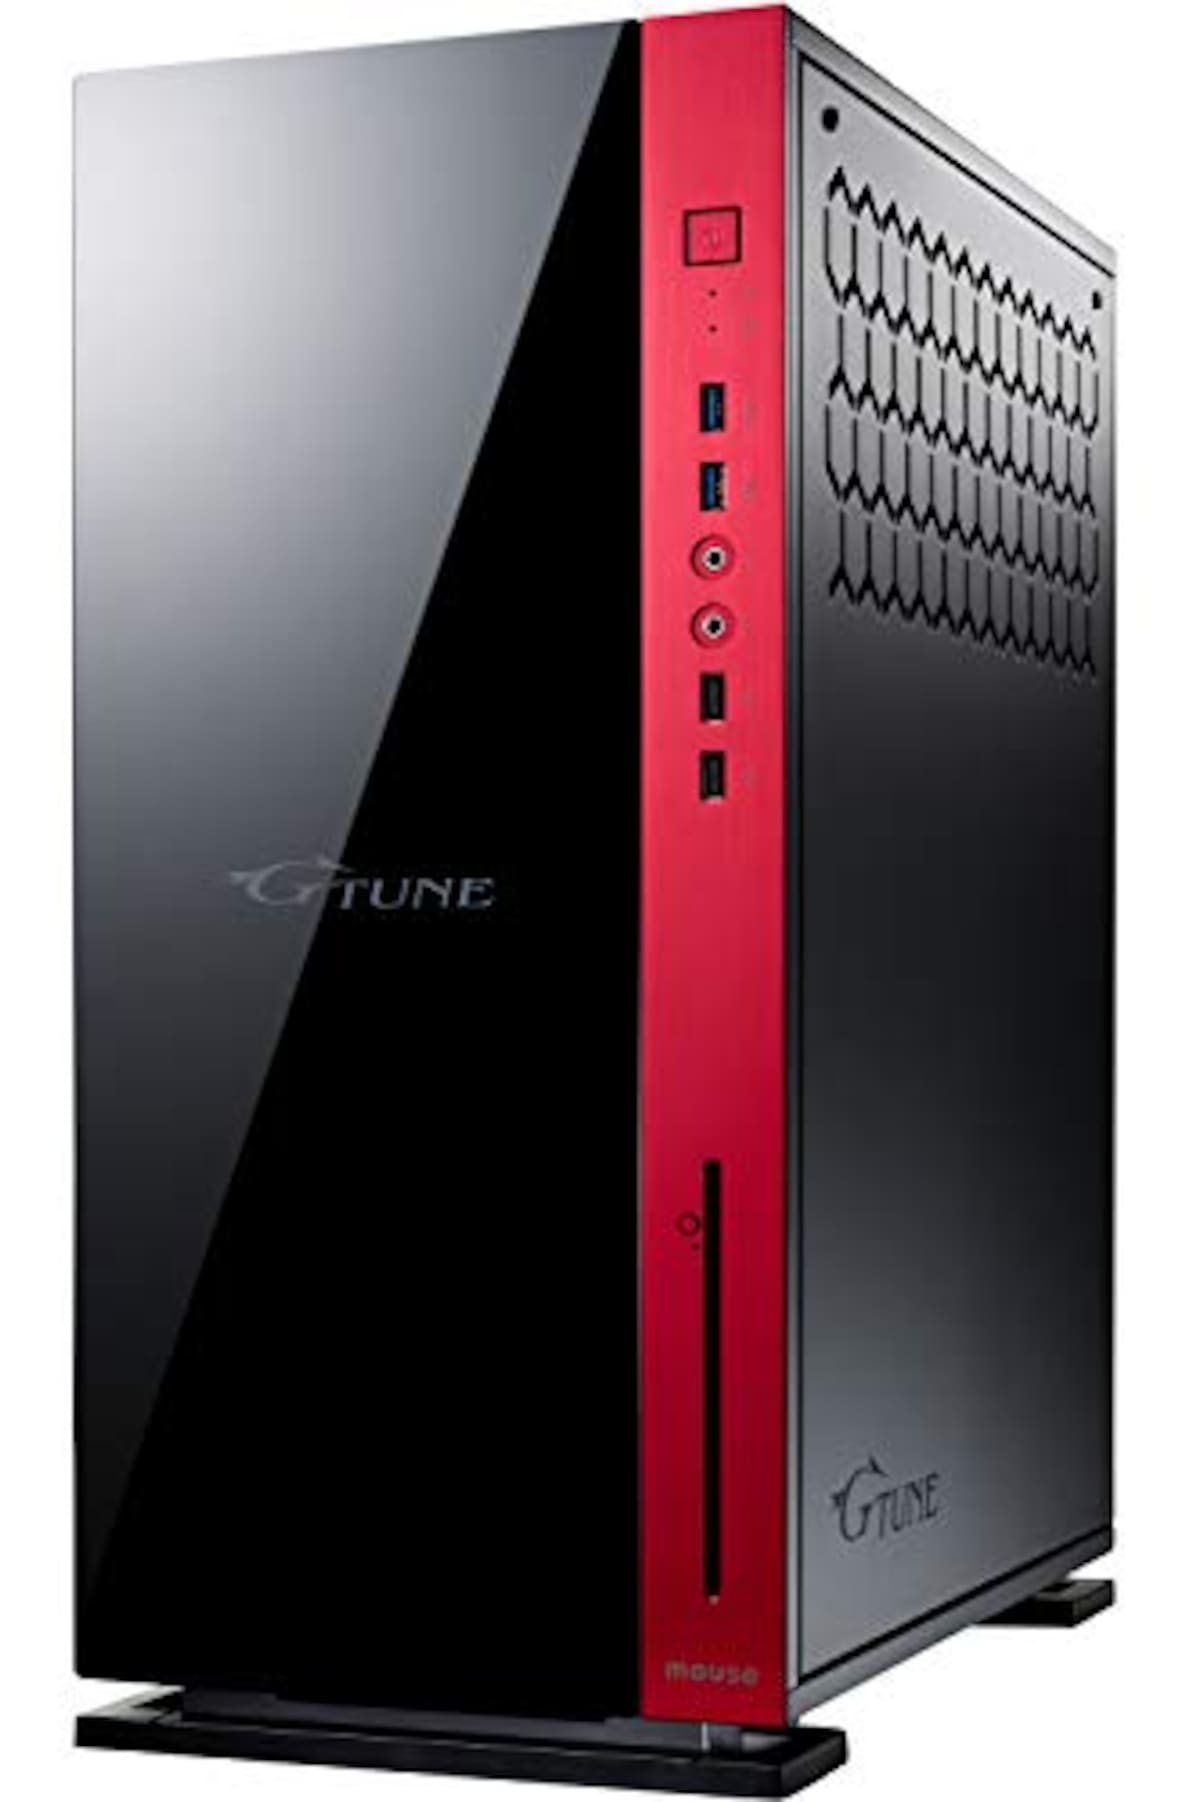 デスクトップパソコン G-Tune